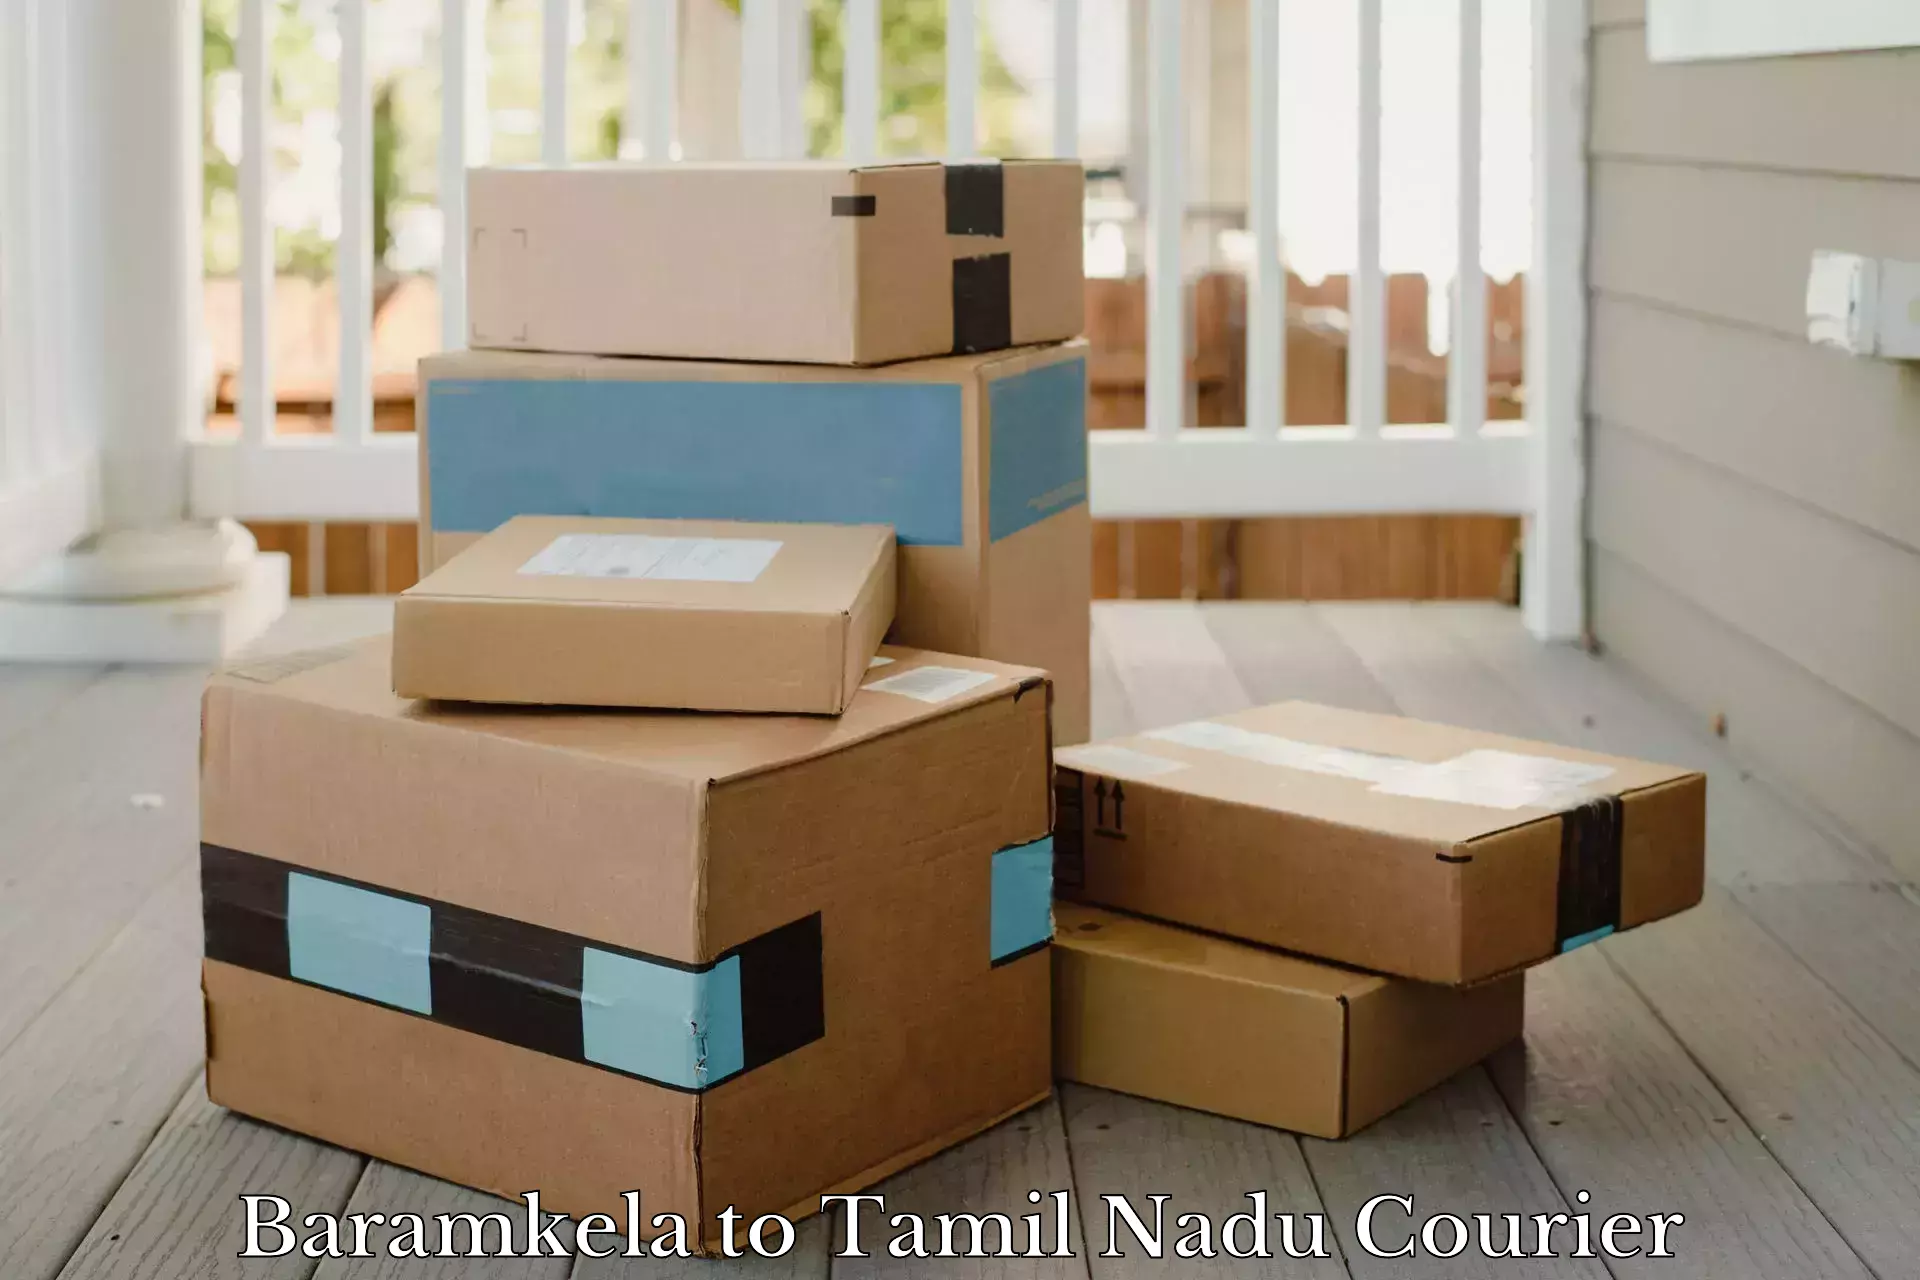 Quick parcel dispatch in Baramkela to The Gandhigram Rural Institute